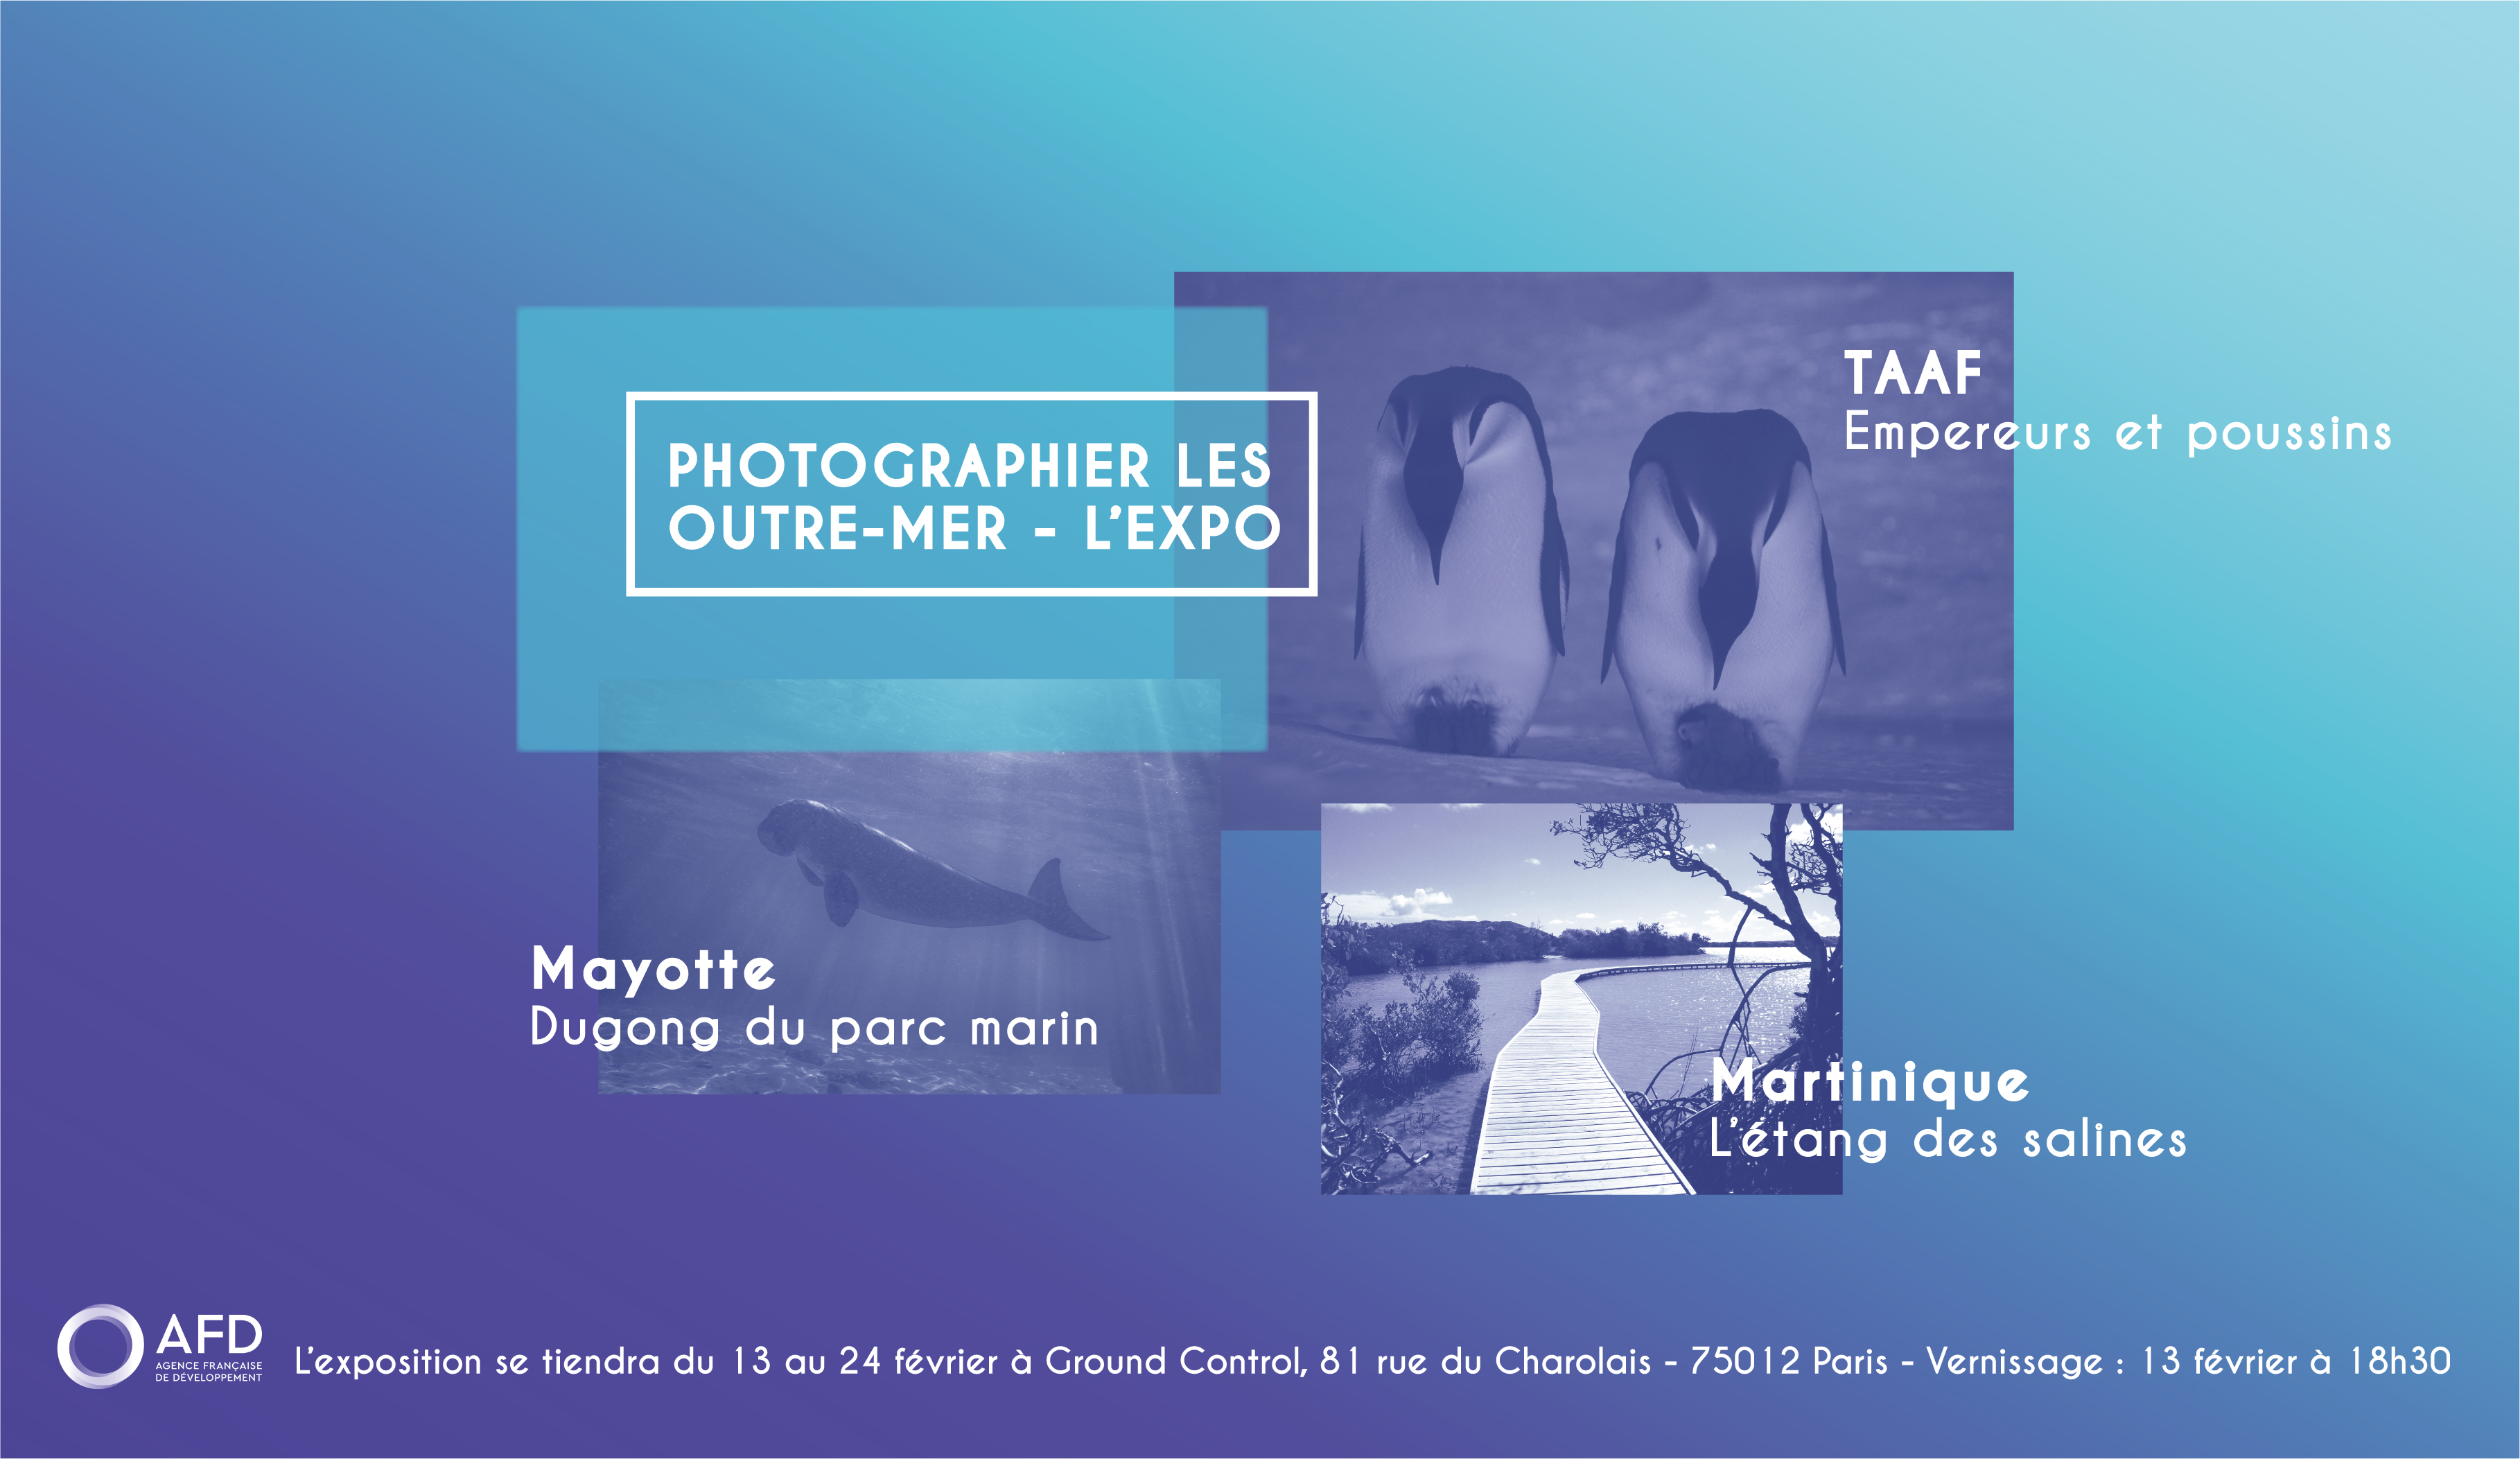 Biodiversité : Après le concours, l’exposition « Photographier les Outre-mer » à Paris